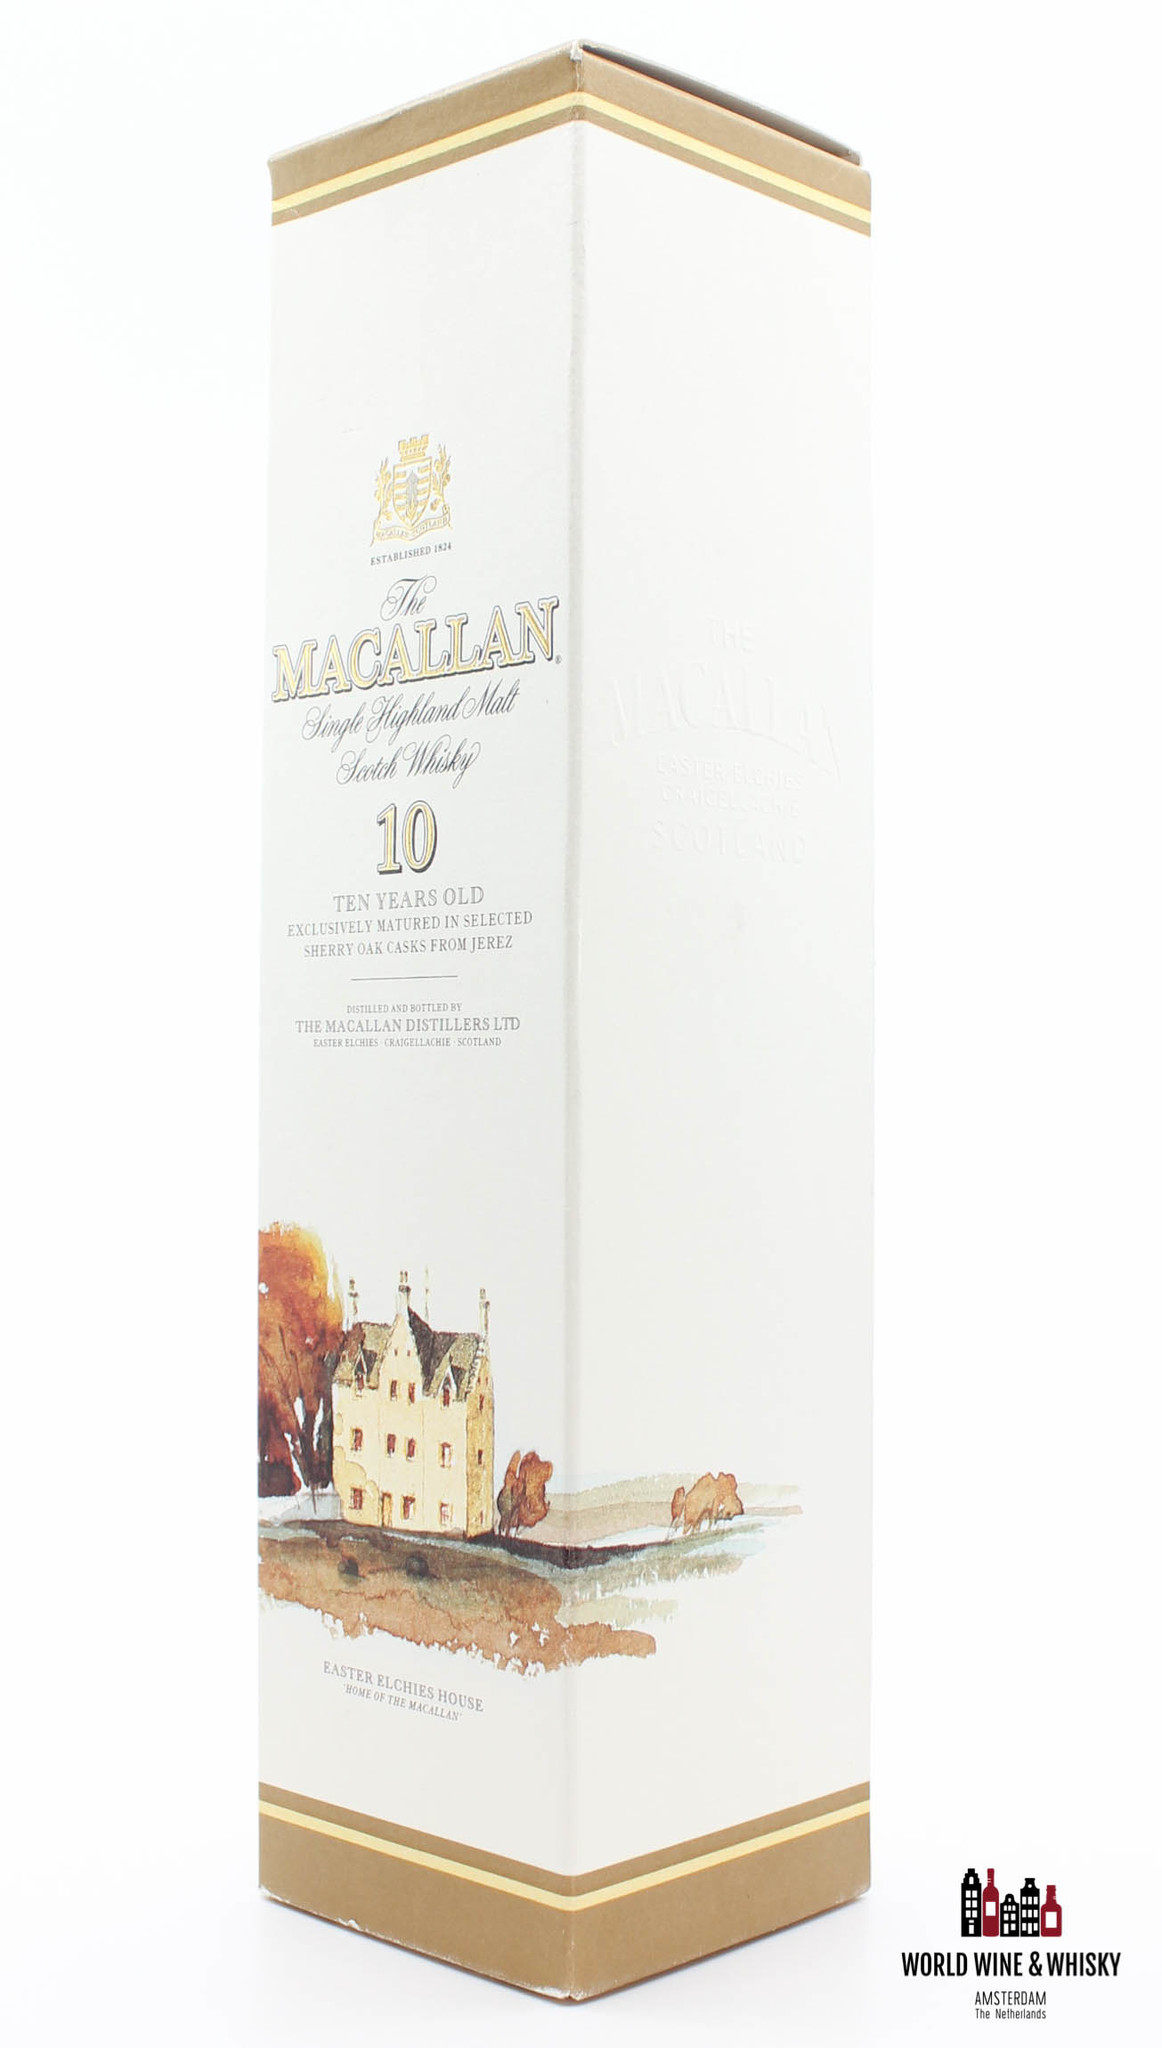 Macallan Macallan 10 Years Old - Sherry Oak Casks From Jerez 40% (90s bottling)